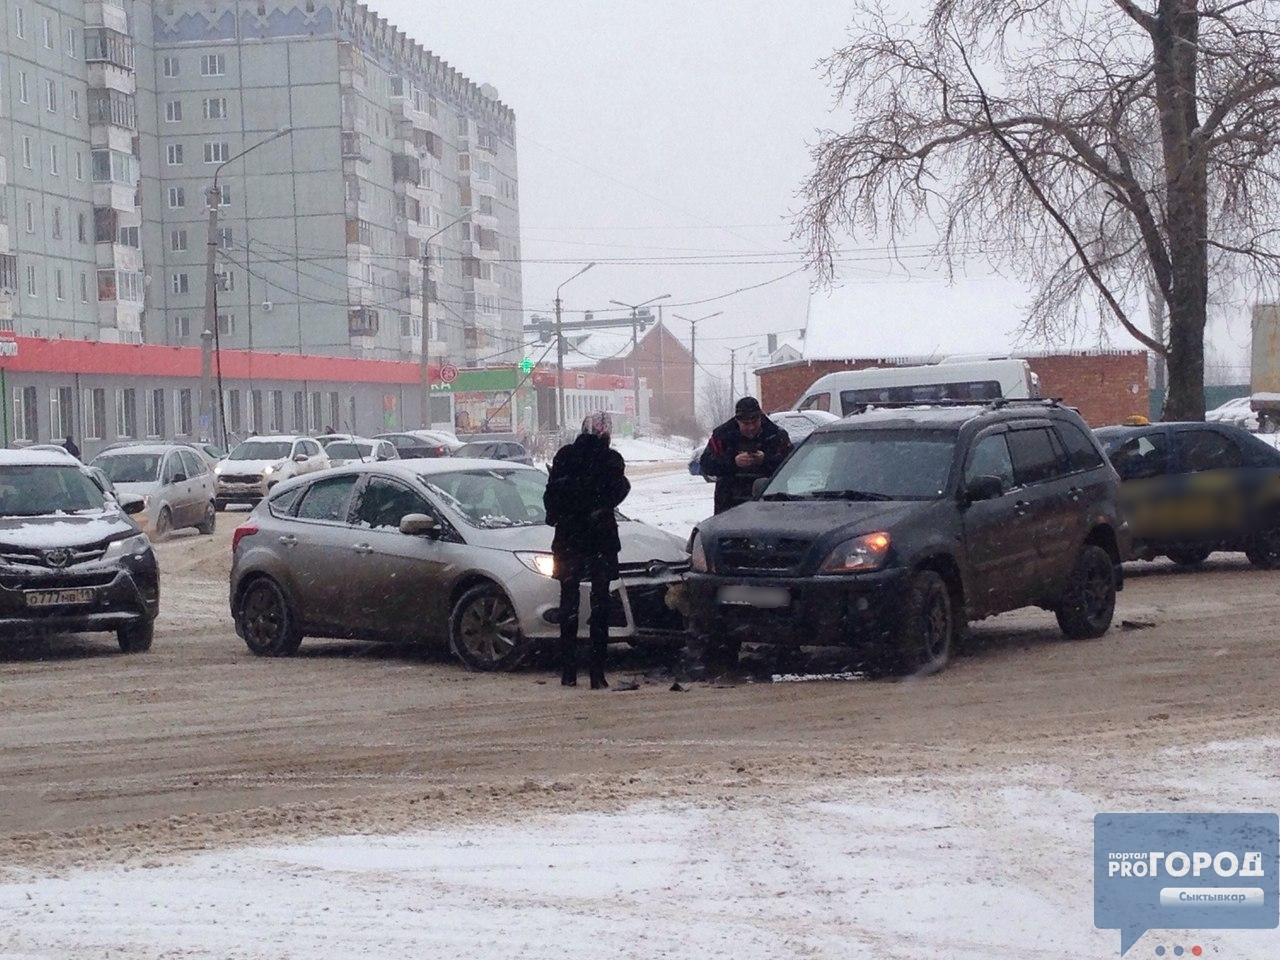 В утренний час пик в Сыктывкаре произошло ДТП, машины встали в пробке (фото)